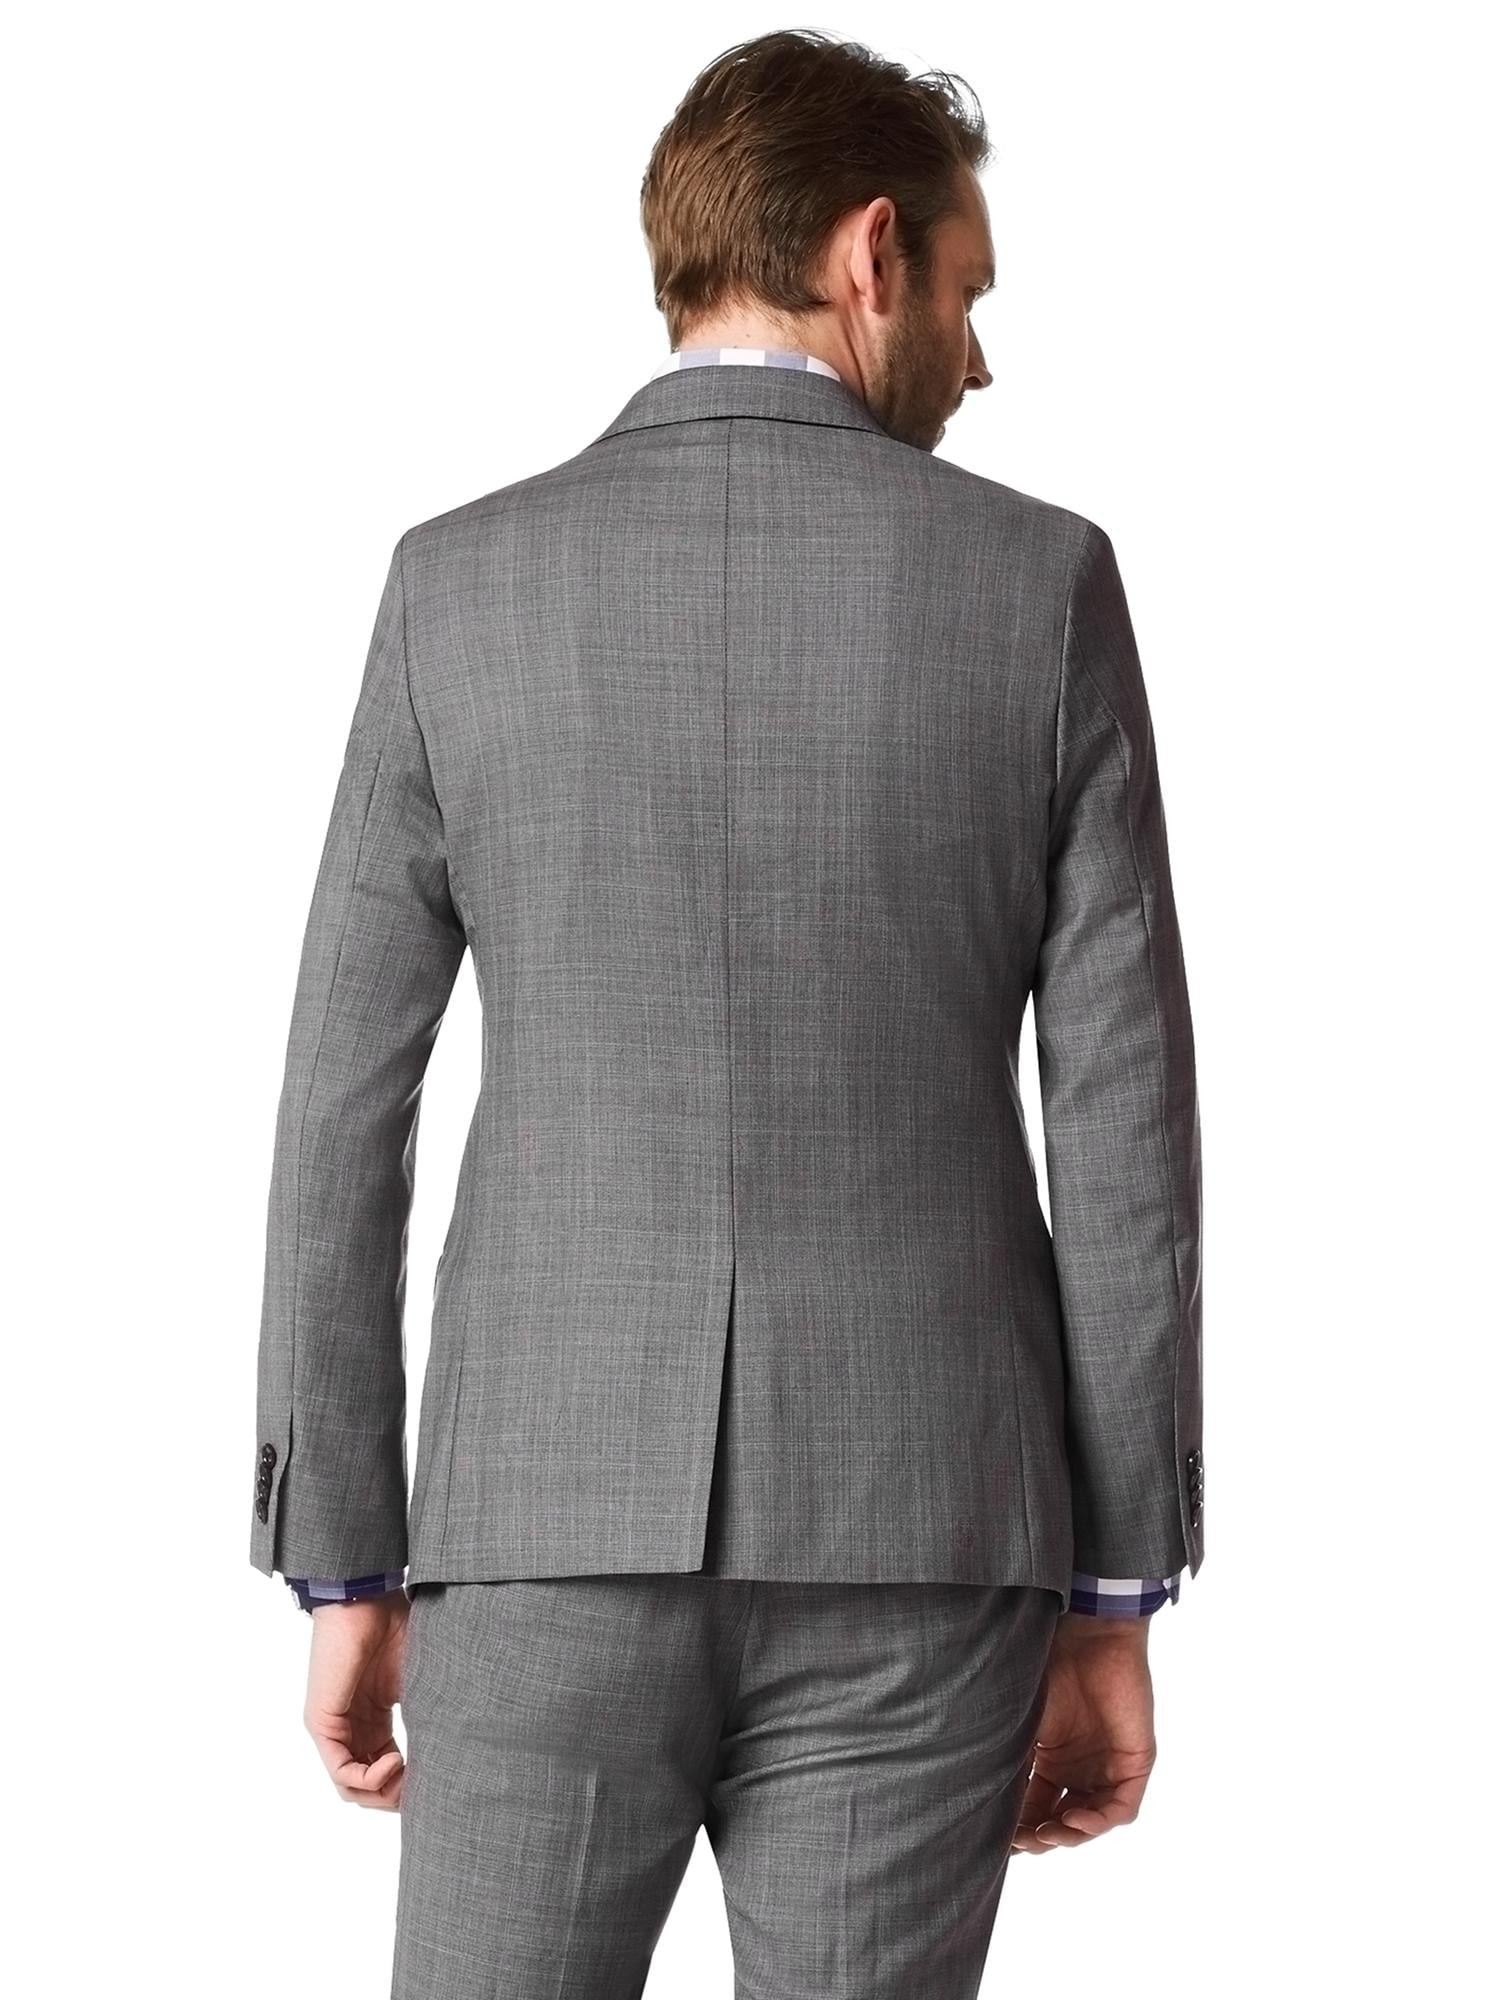 Modern Slim-Fit Grey Plaid Wool Suit Jacket